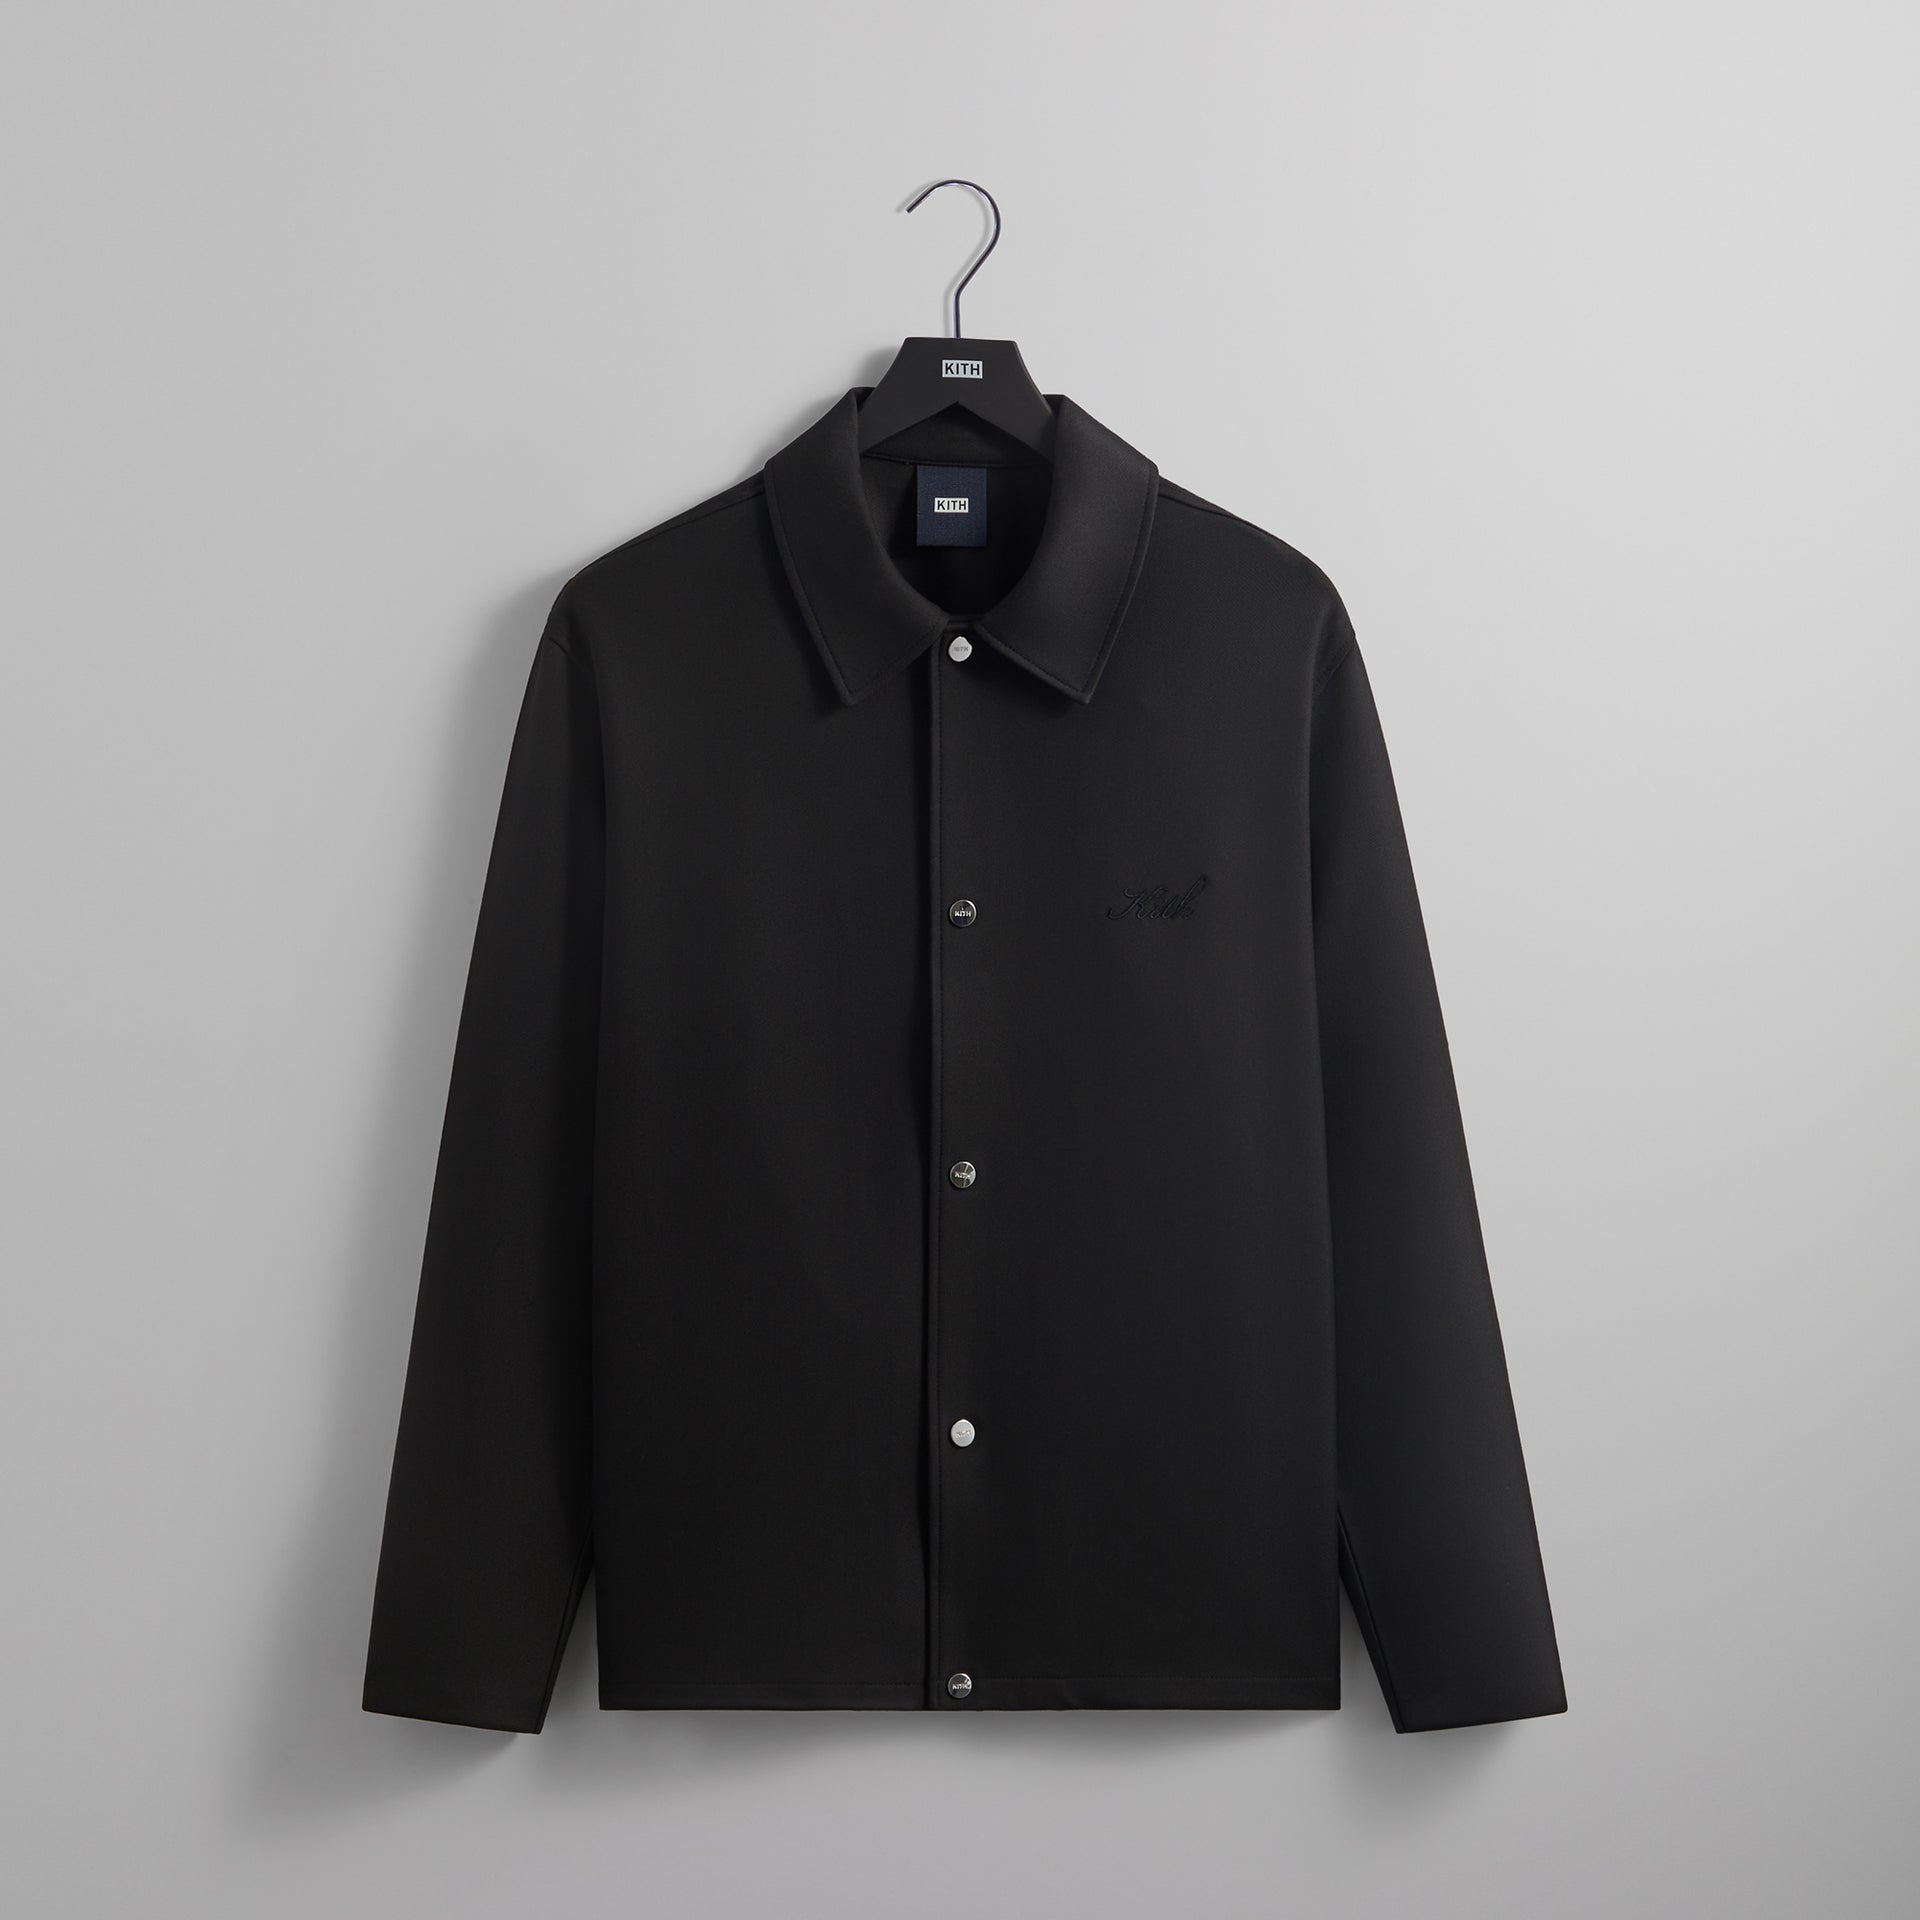 UrlfreezeShops Double Knit Coaches Jacket - Black